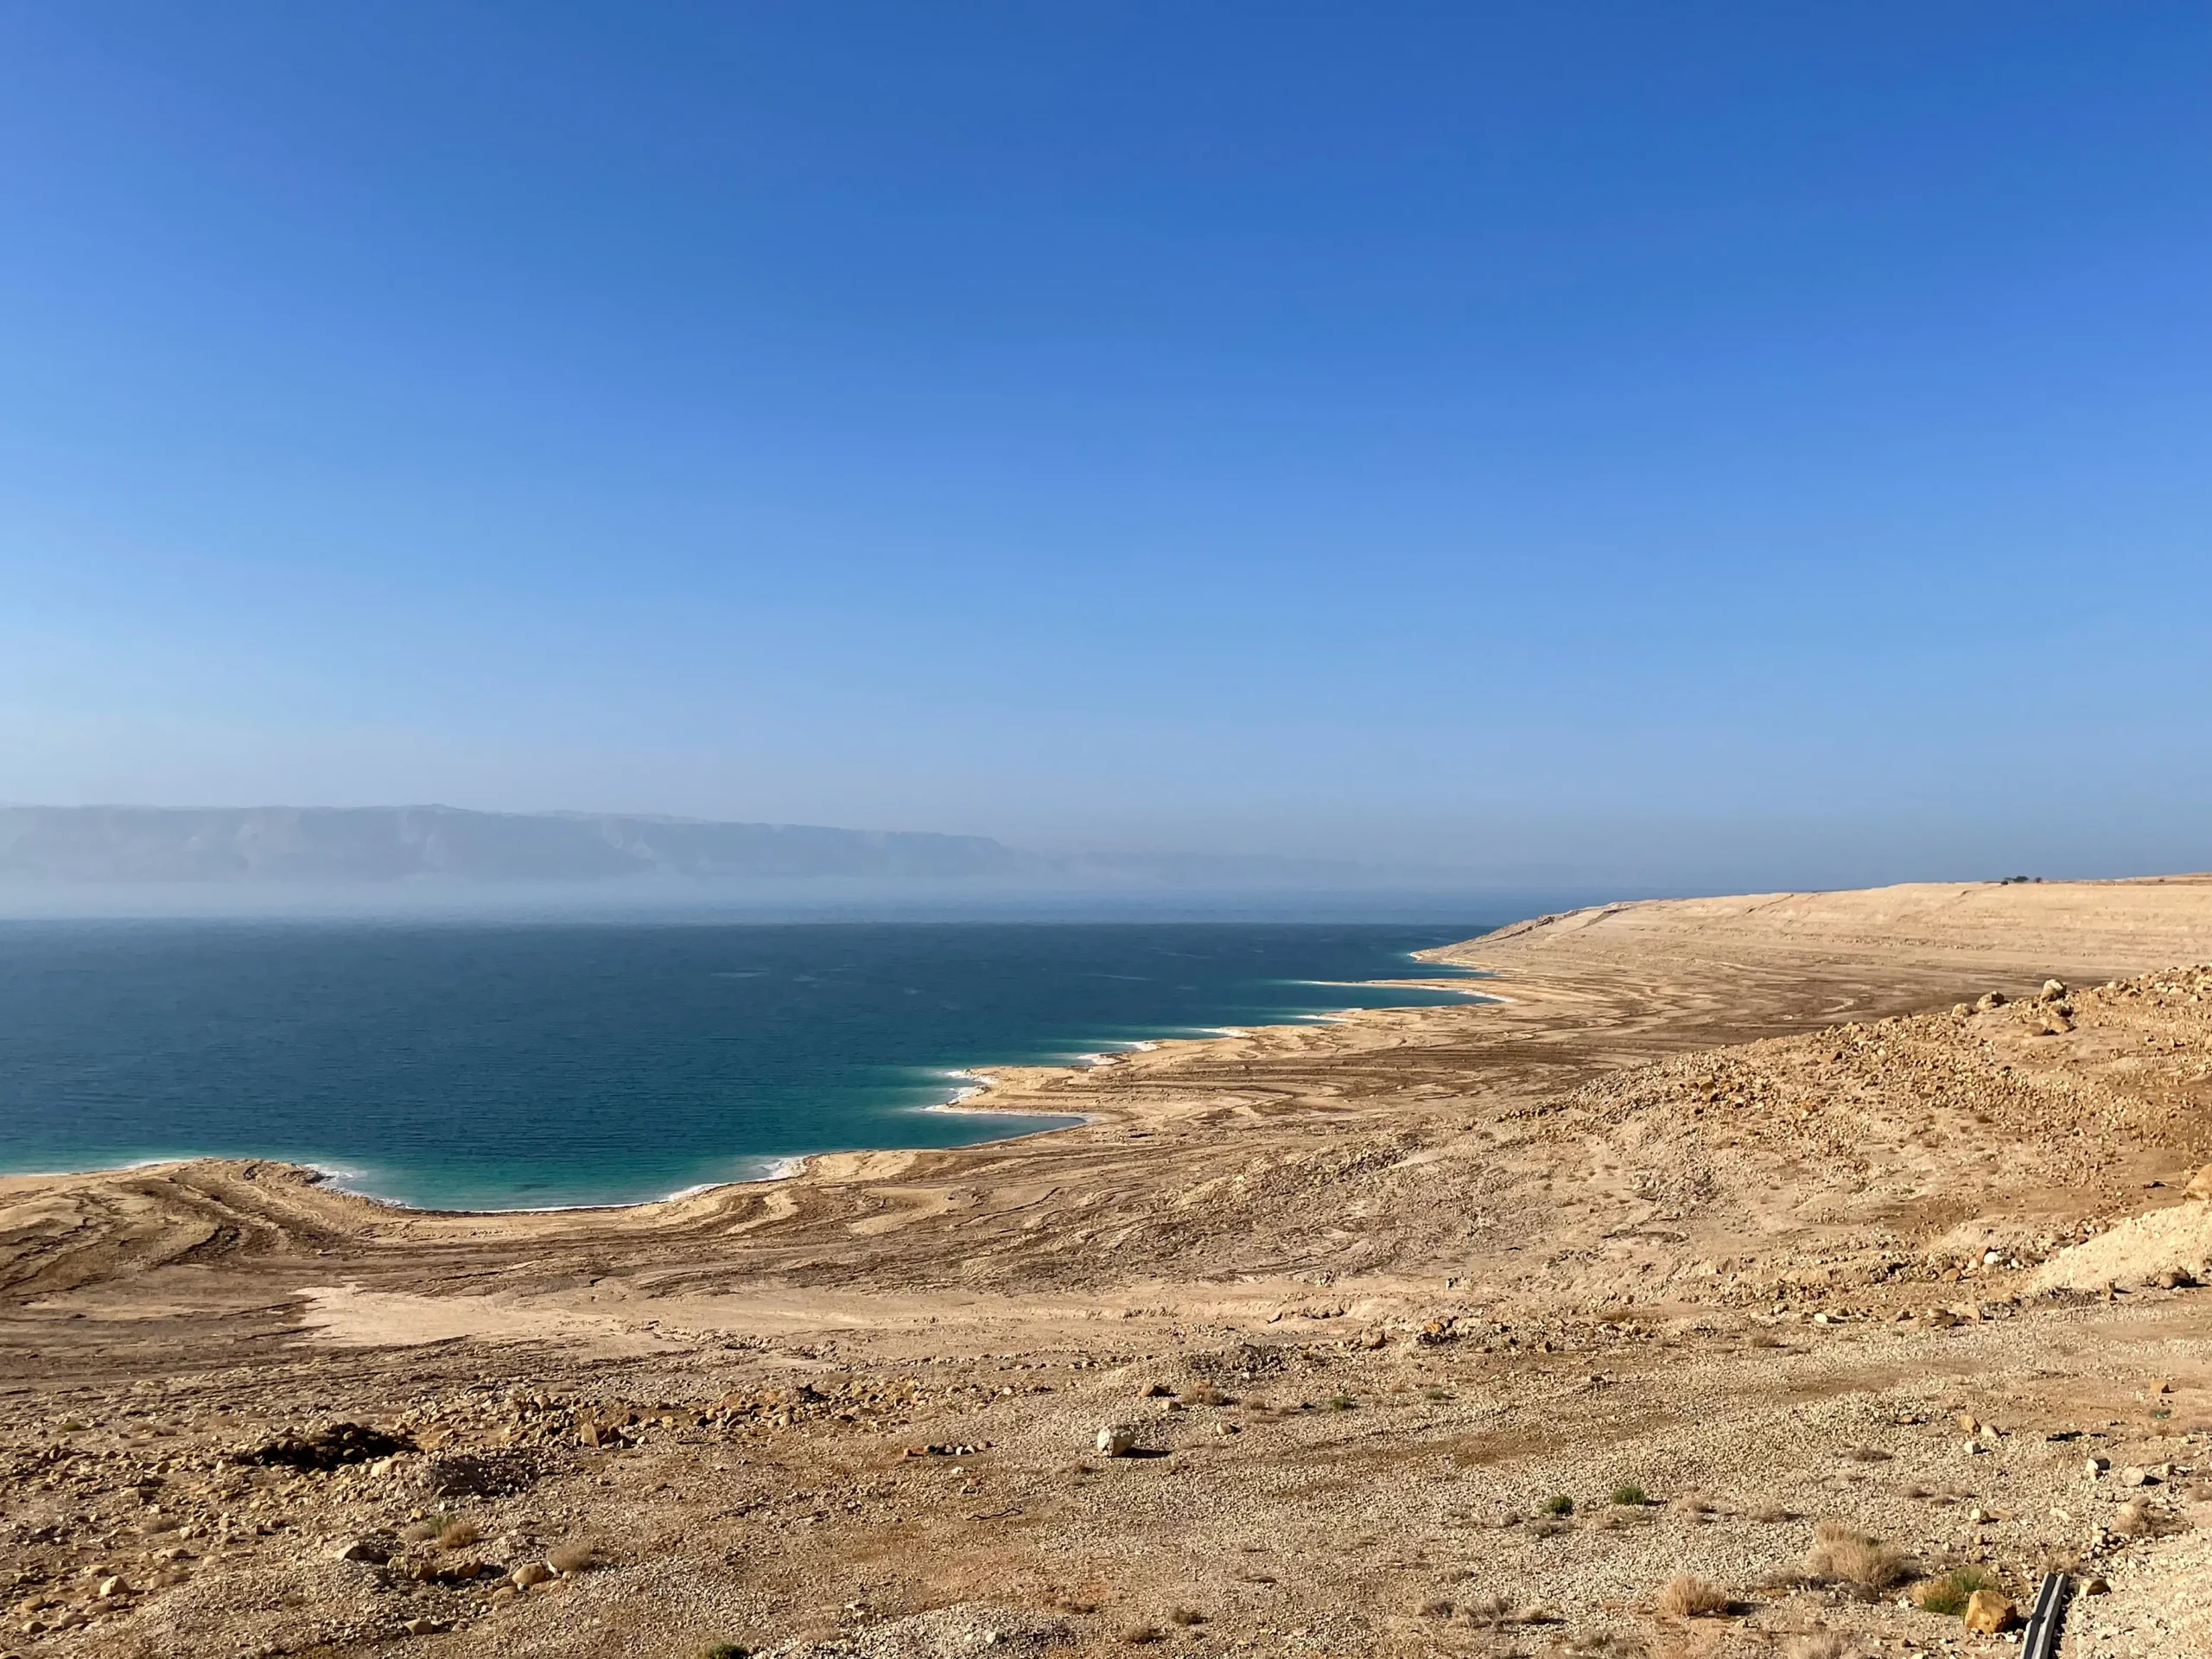 Vistas al Mar Muerto desde la carretera